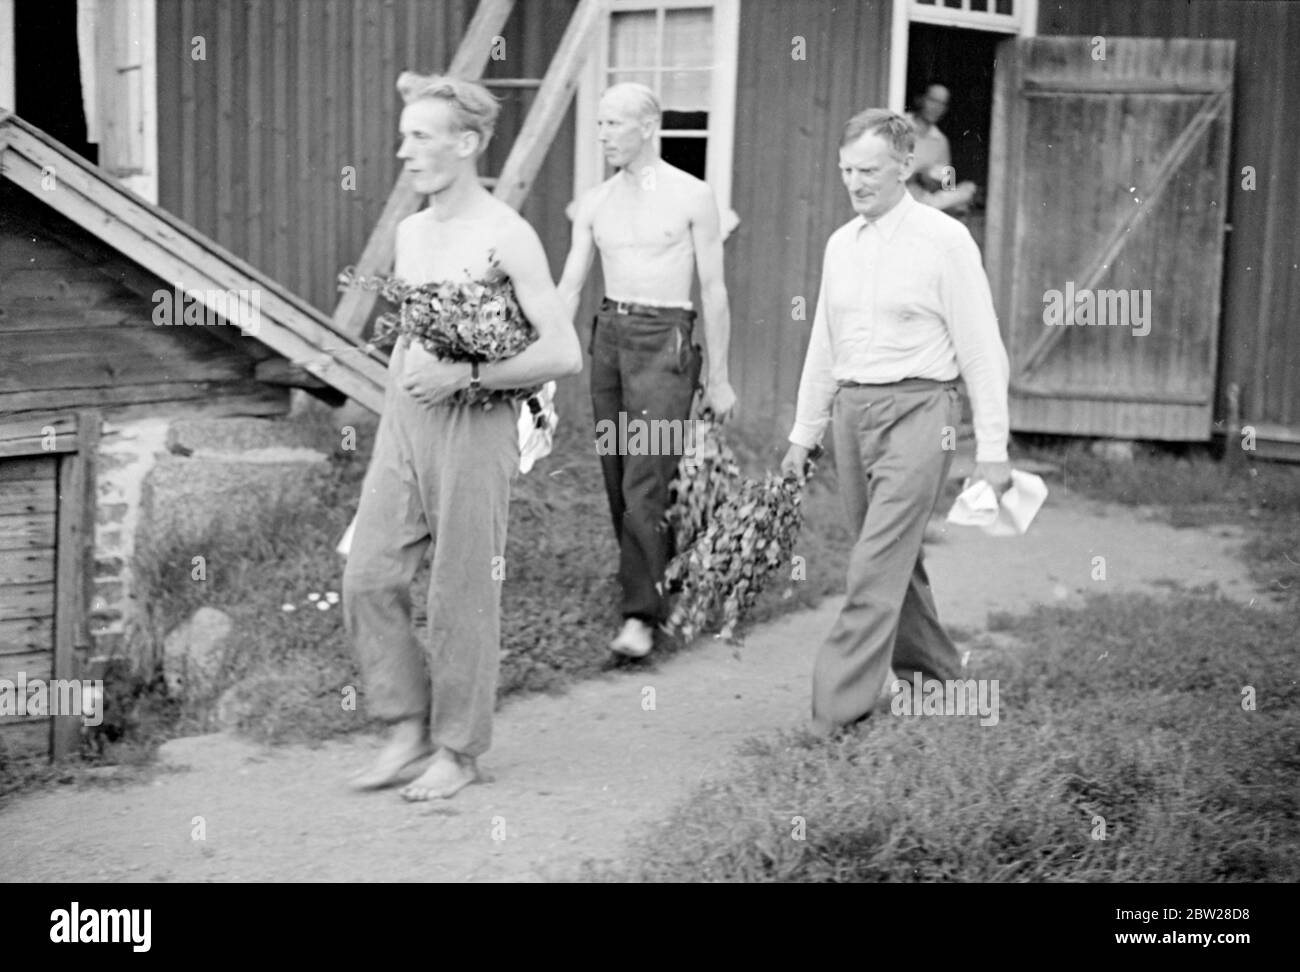 Farmers Finland - Finnish Daily Life Forest Academy of Korkeakoski 1939 aus einer Serie Diese Männer bauten die Mannerheim Linie - die finnische Zone der Grenzbefestigungen wurde vollständig von der finnischen Bevölkerung entworfen und gebaut. Finnische Ingenieure begannen die Arbeit auf der Linie im Jahr 1937, aber es war nicht bis in diesem Sommer im Jahr 1939, dass die Arbeiten beschleunigt und abgeschlossen. Dann, im Bewusstsein der Gefahren einer schwachen Grenze, gaben junge finnische Männer und Studenten ihre Sommerferien auf, um freiwillig beim Bau von Panzerfallen und Befestigungsanlagen zu helfen. Stockfoto